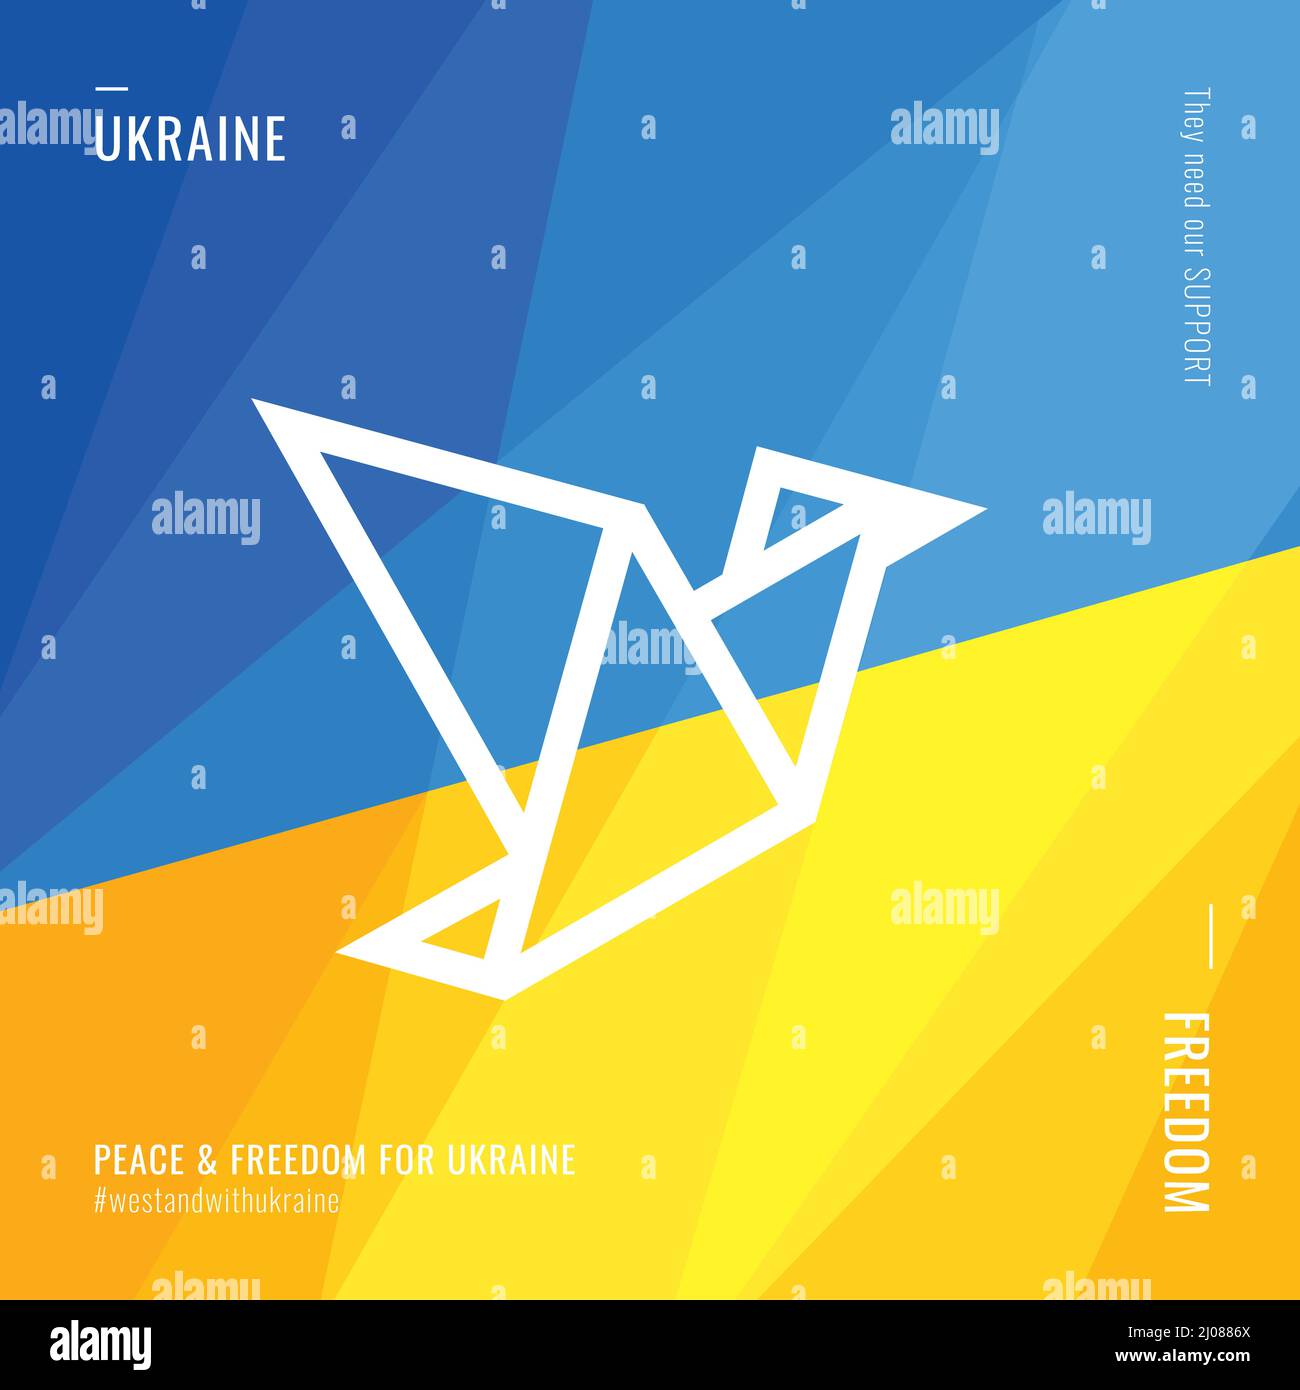 Frieden und Freiheit. Unterstützung für die Ukraine. Vogelflug. Blau gelbe abstrakte Hintergründe. Banner-Vorlage. Vektor Stock Vektor